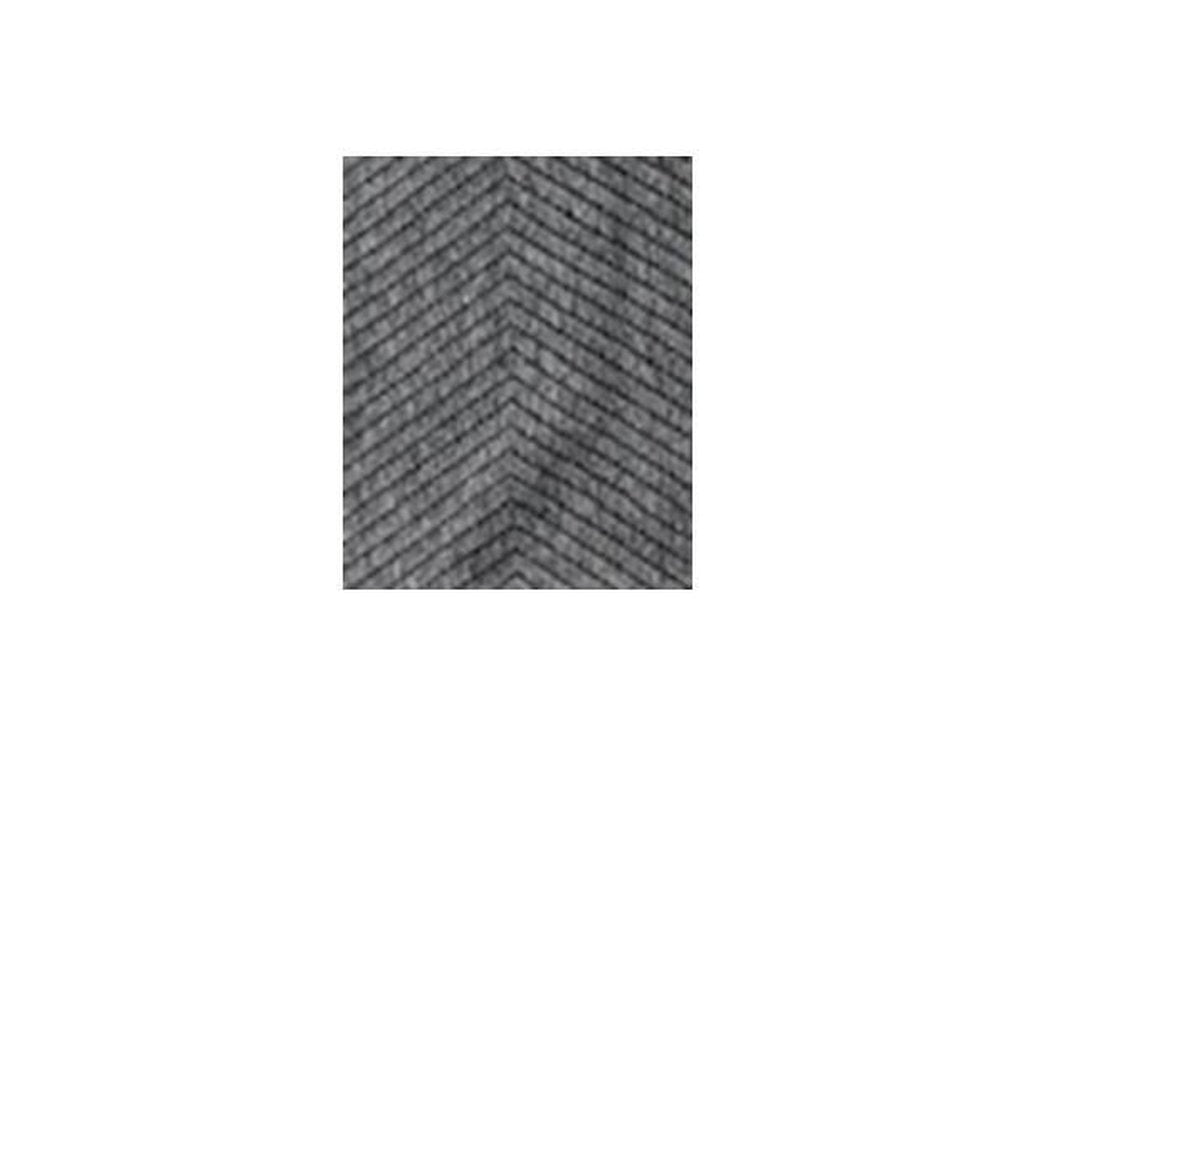 Tapis Exclusif Viva recto verso - tapis double face - antidérapant gratuit inclus - gris gris - 160/230 cm - tapis - rayé et chevrons